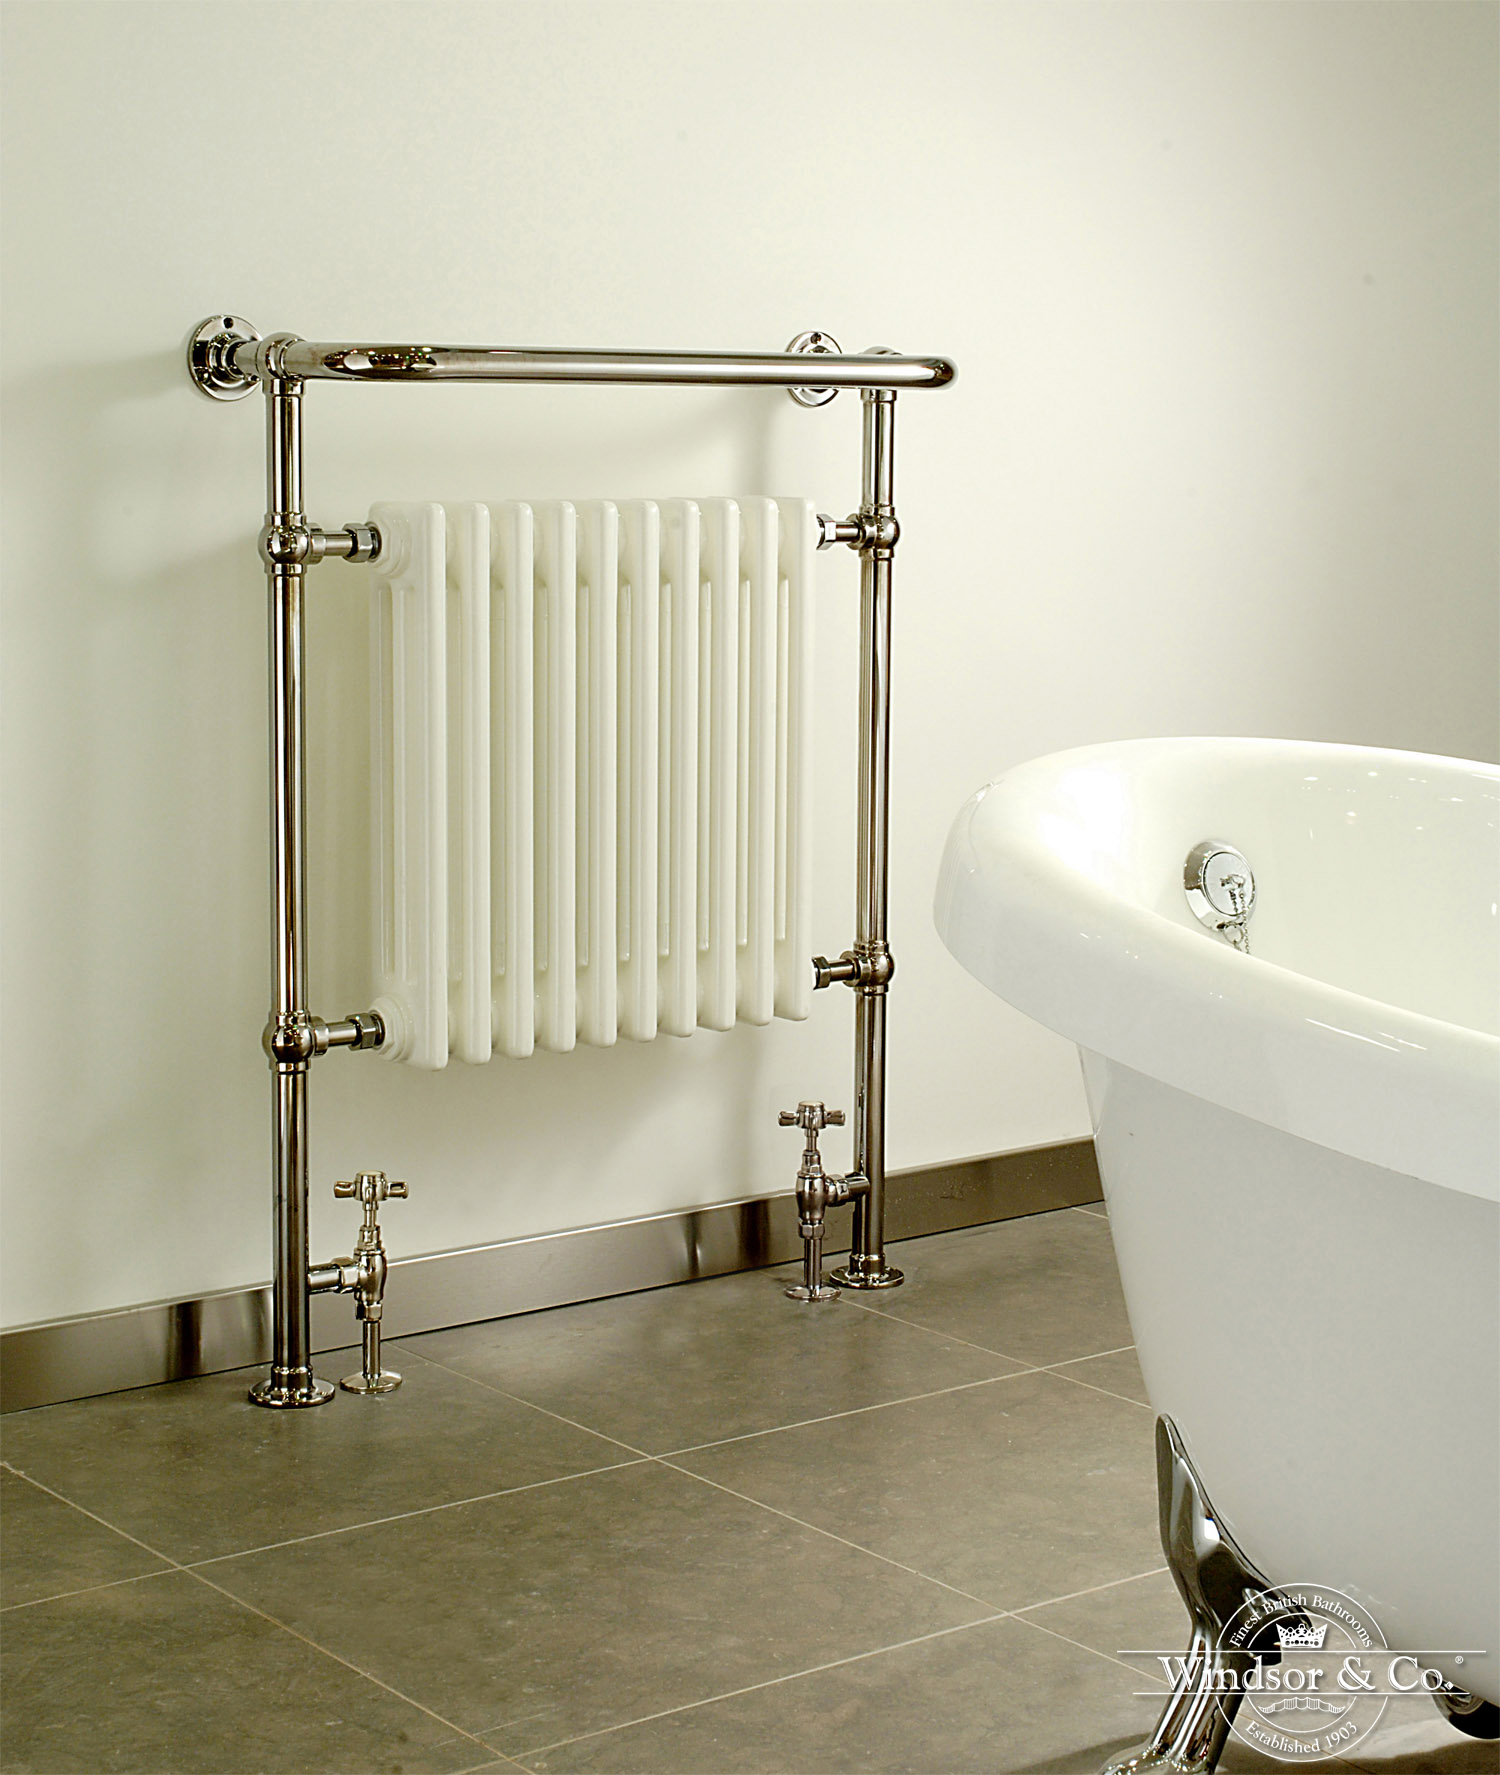 Foto : Windsor Bathrooms | Klassieke Radiatoren